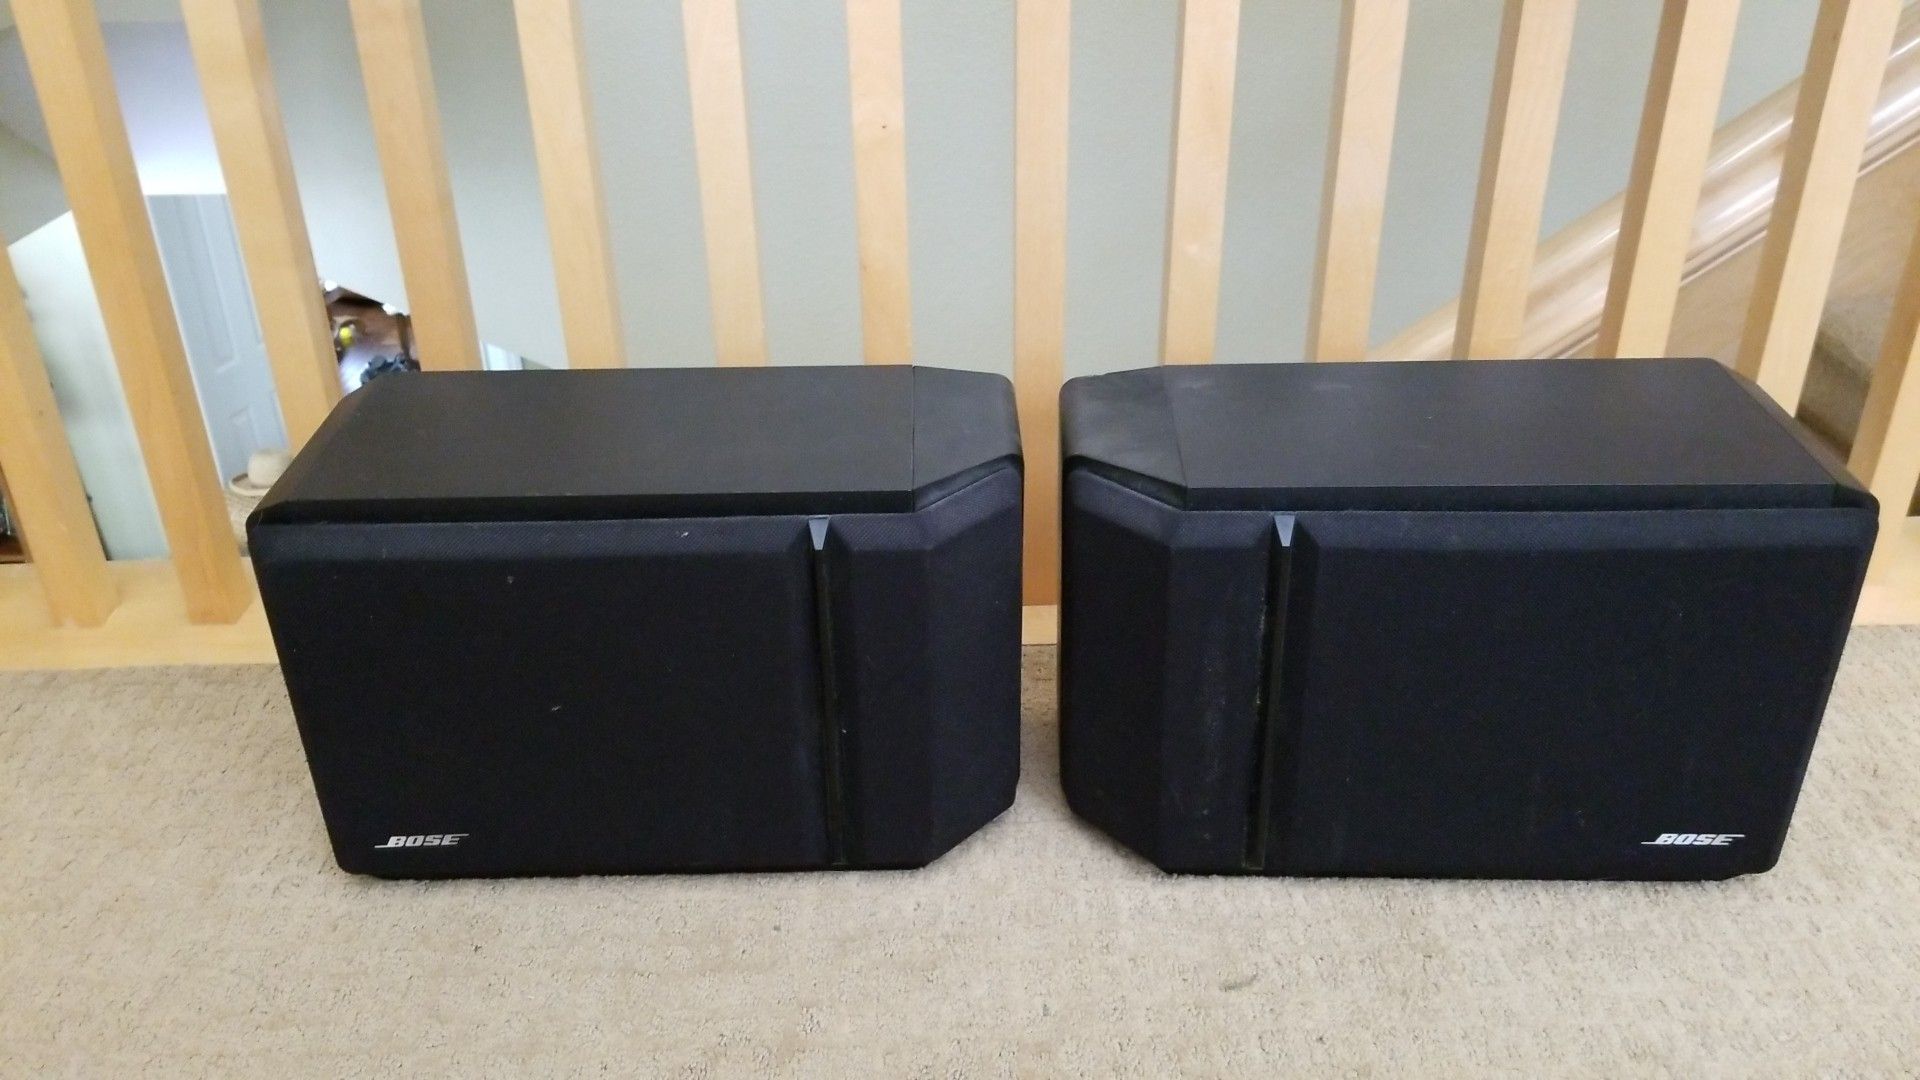 Bose speakers 201 speakers shelf speakers